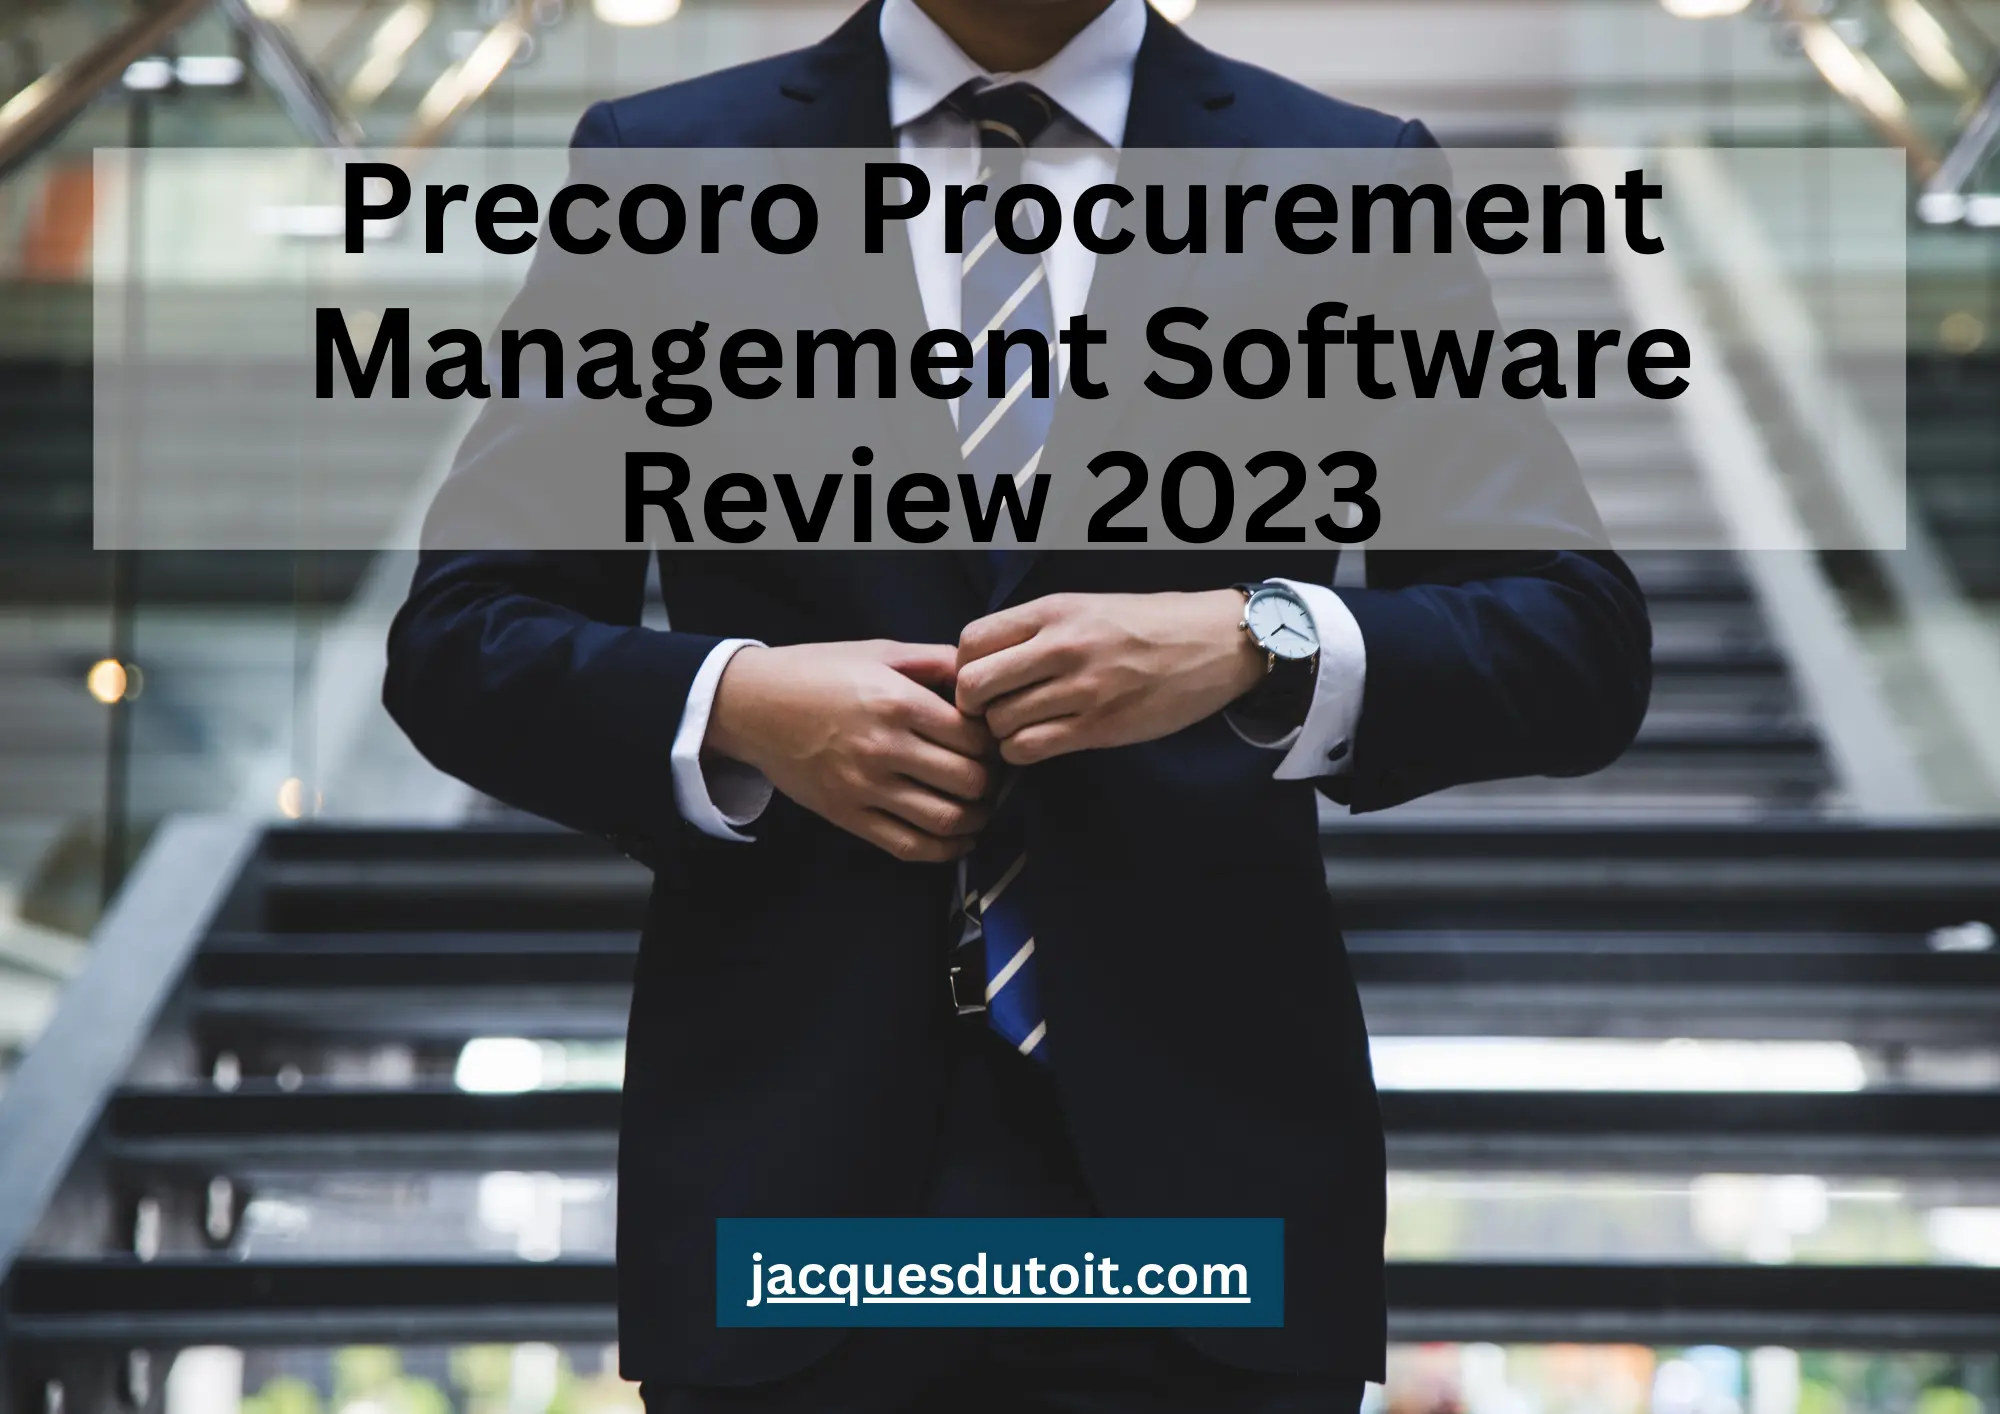 Precoro Procurement Management Software Review 2023